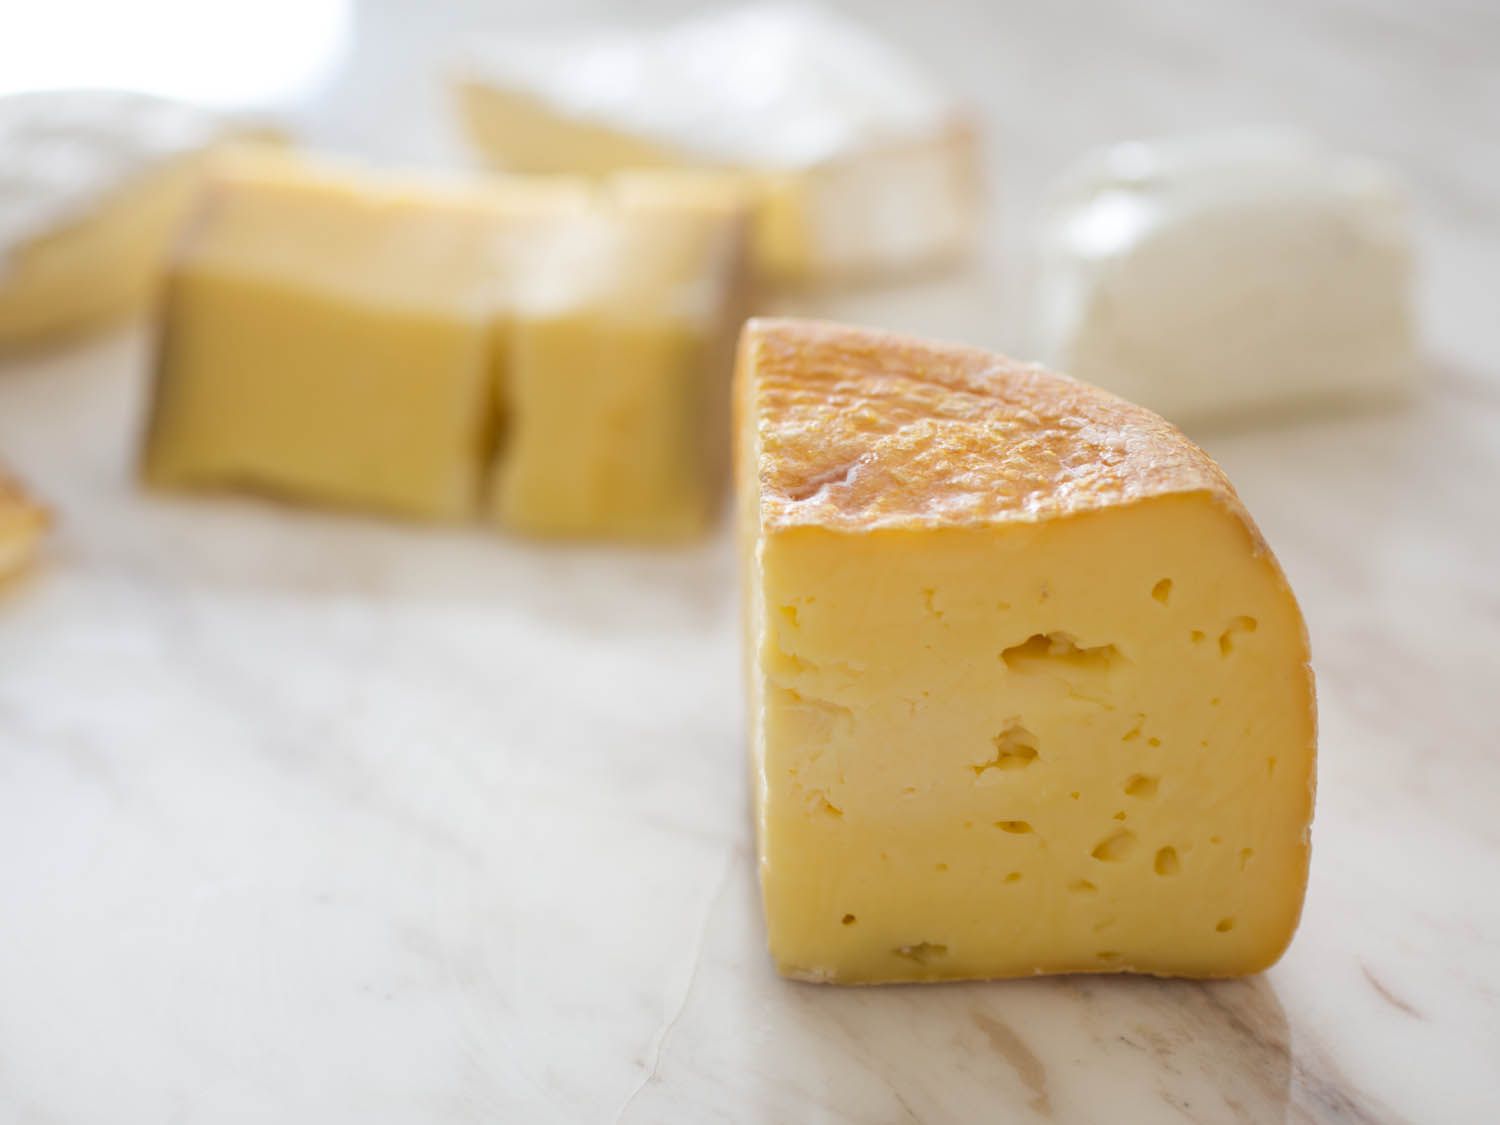 大理石台面上放着四种不同的奶酪。